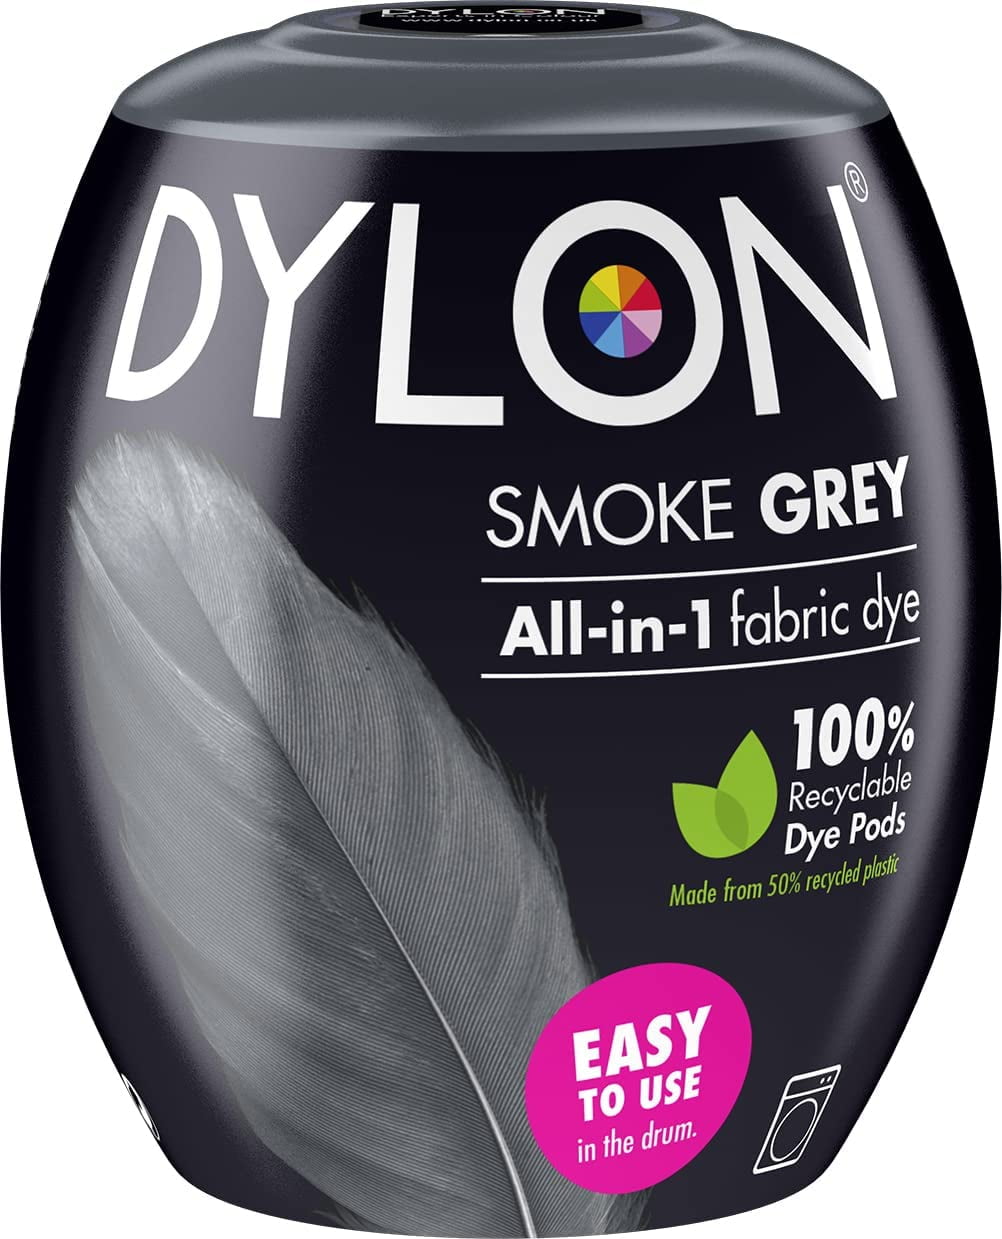 Intense Black Fabric Dye by Dylon